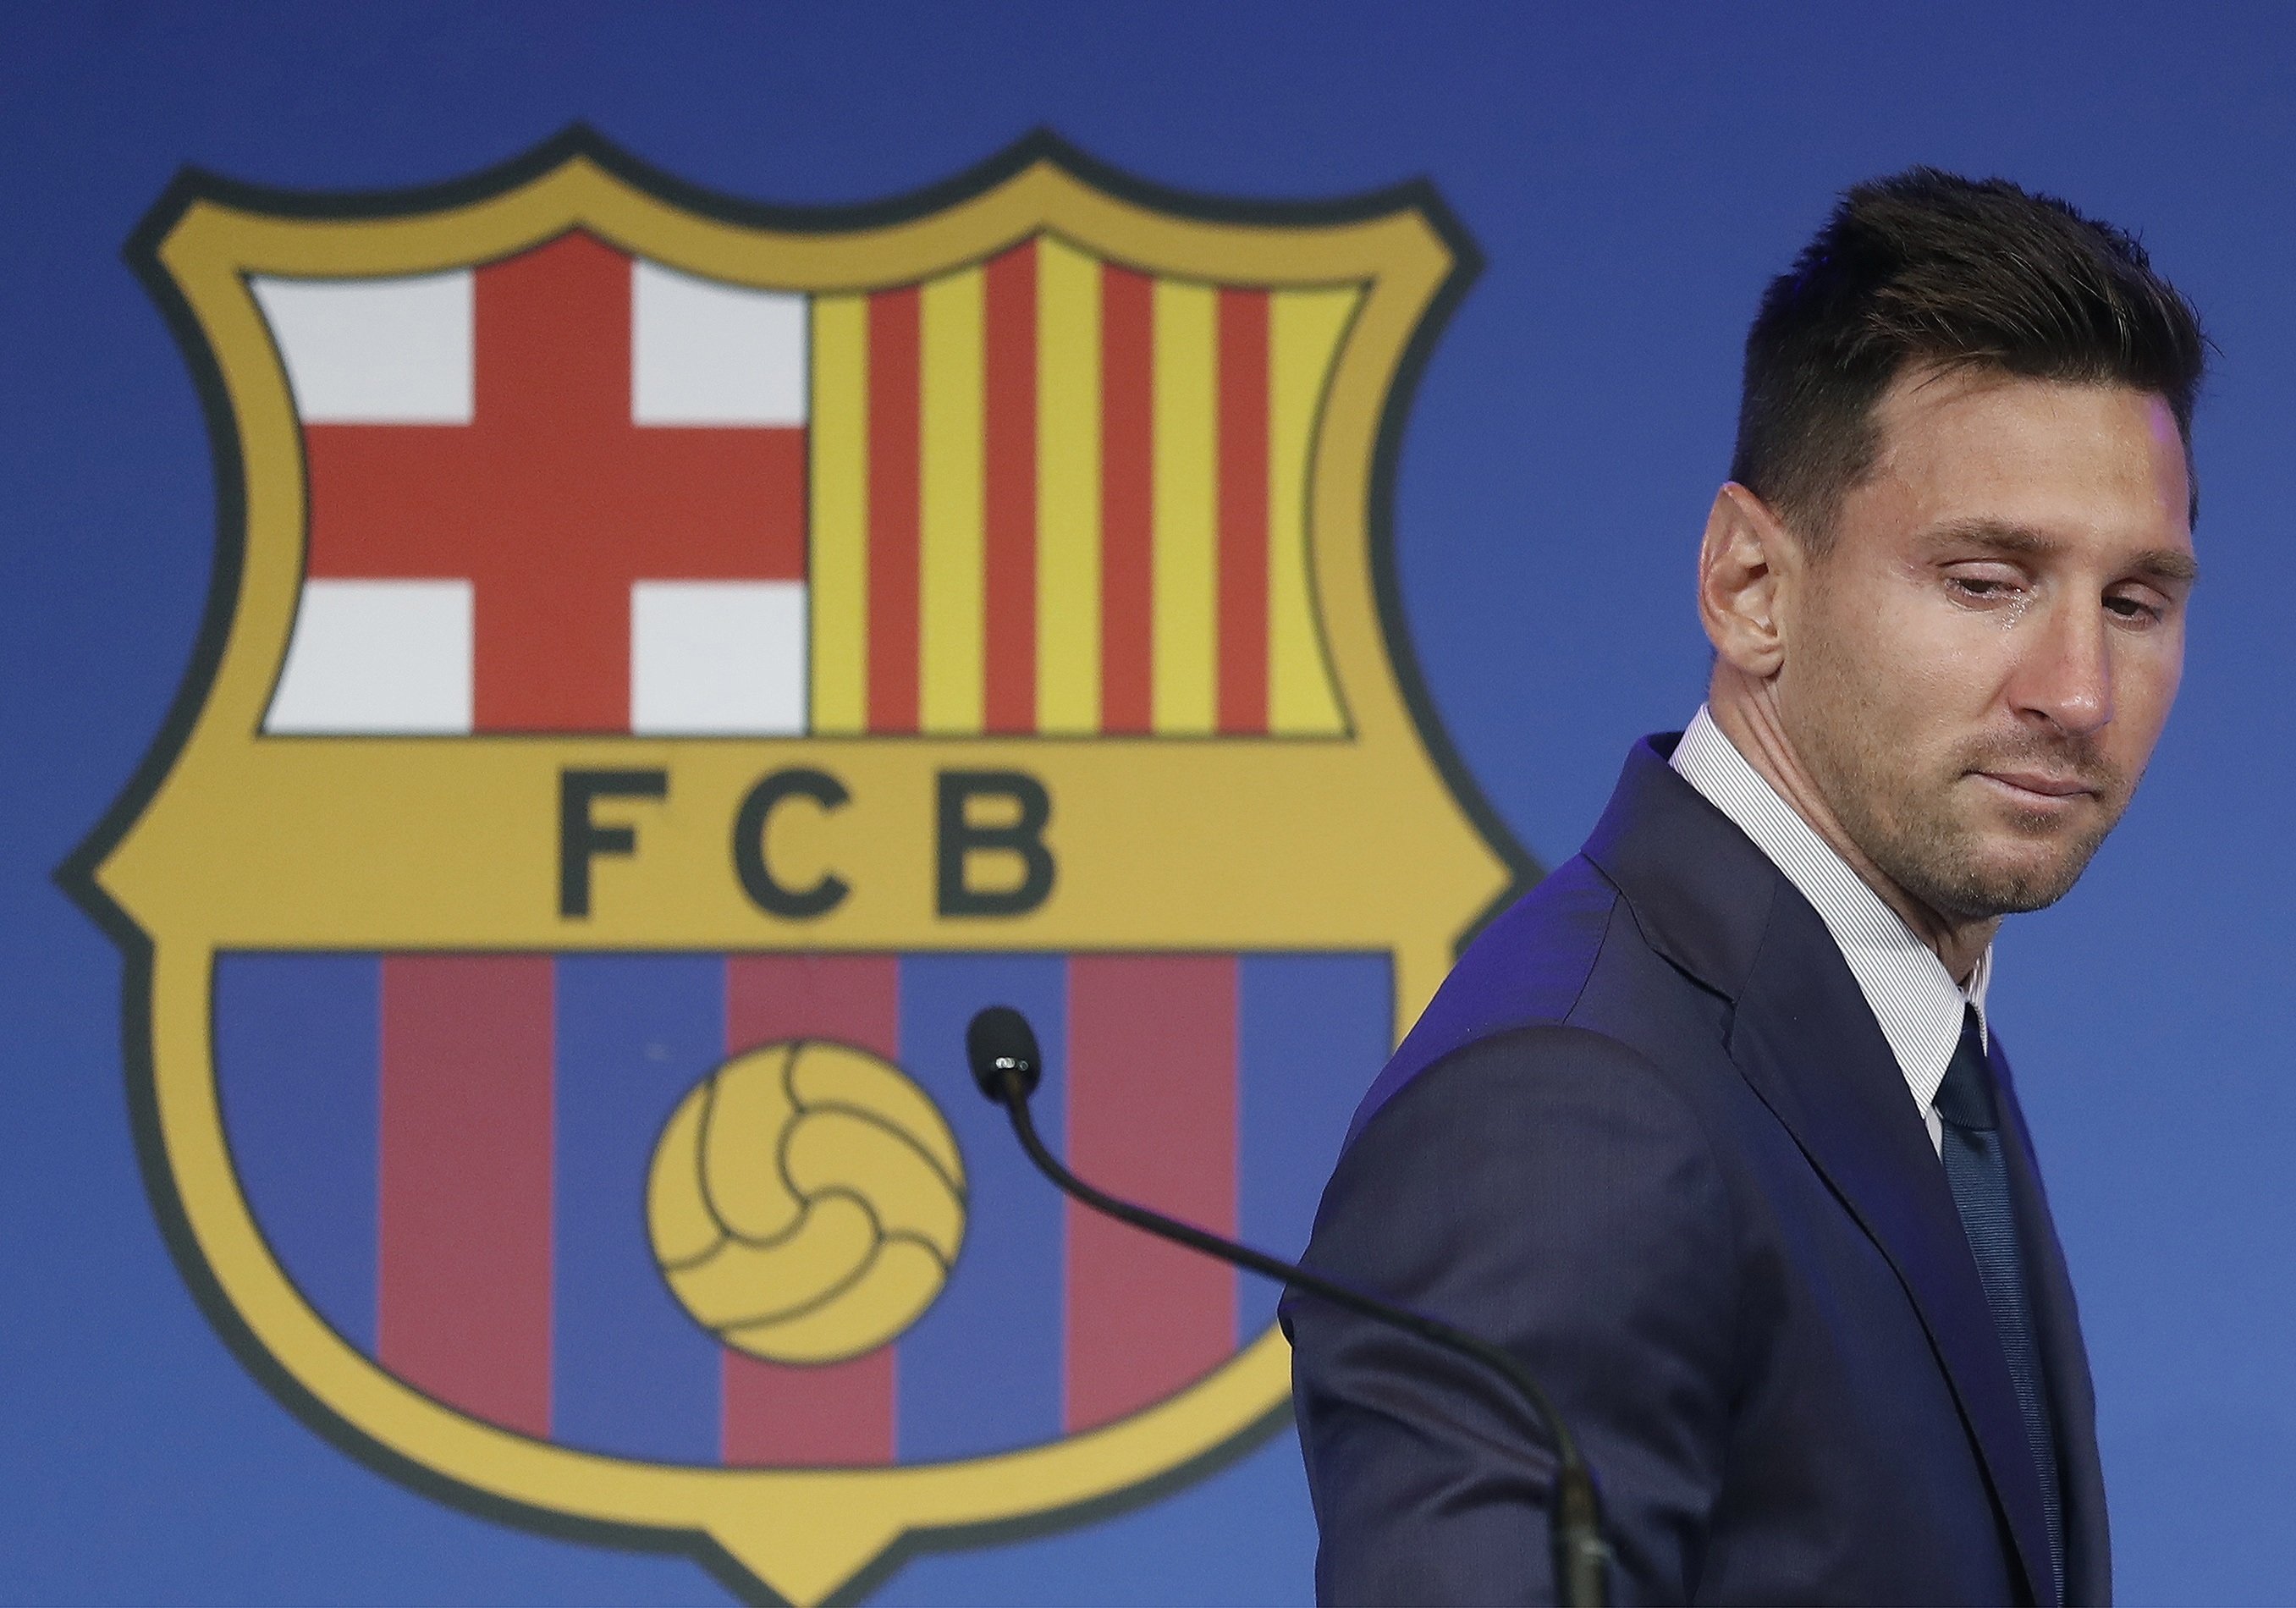 Las portadas deportivas lloran con Messi menos en Francia, donde ya lo esperan